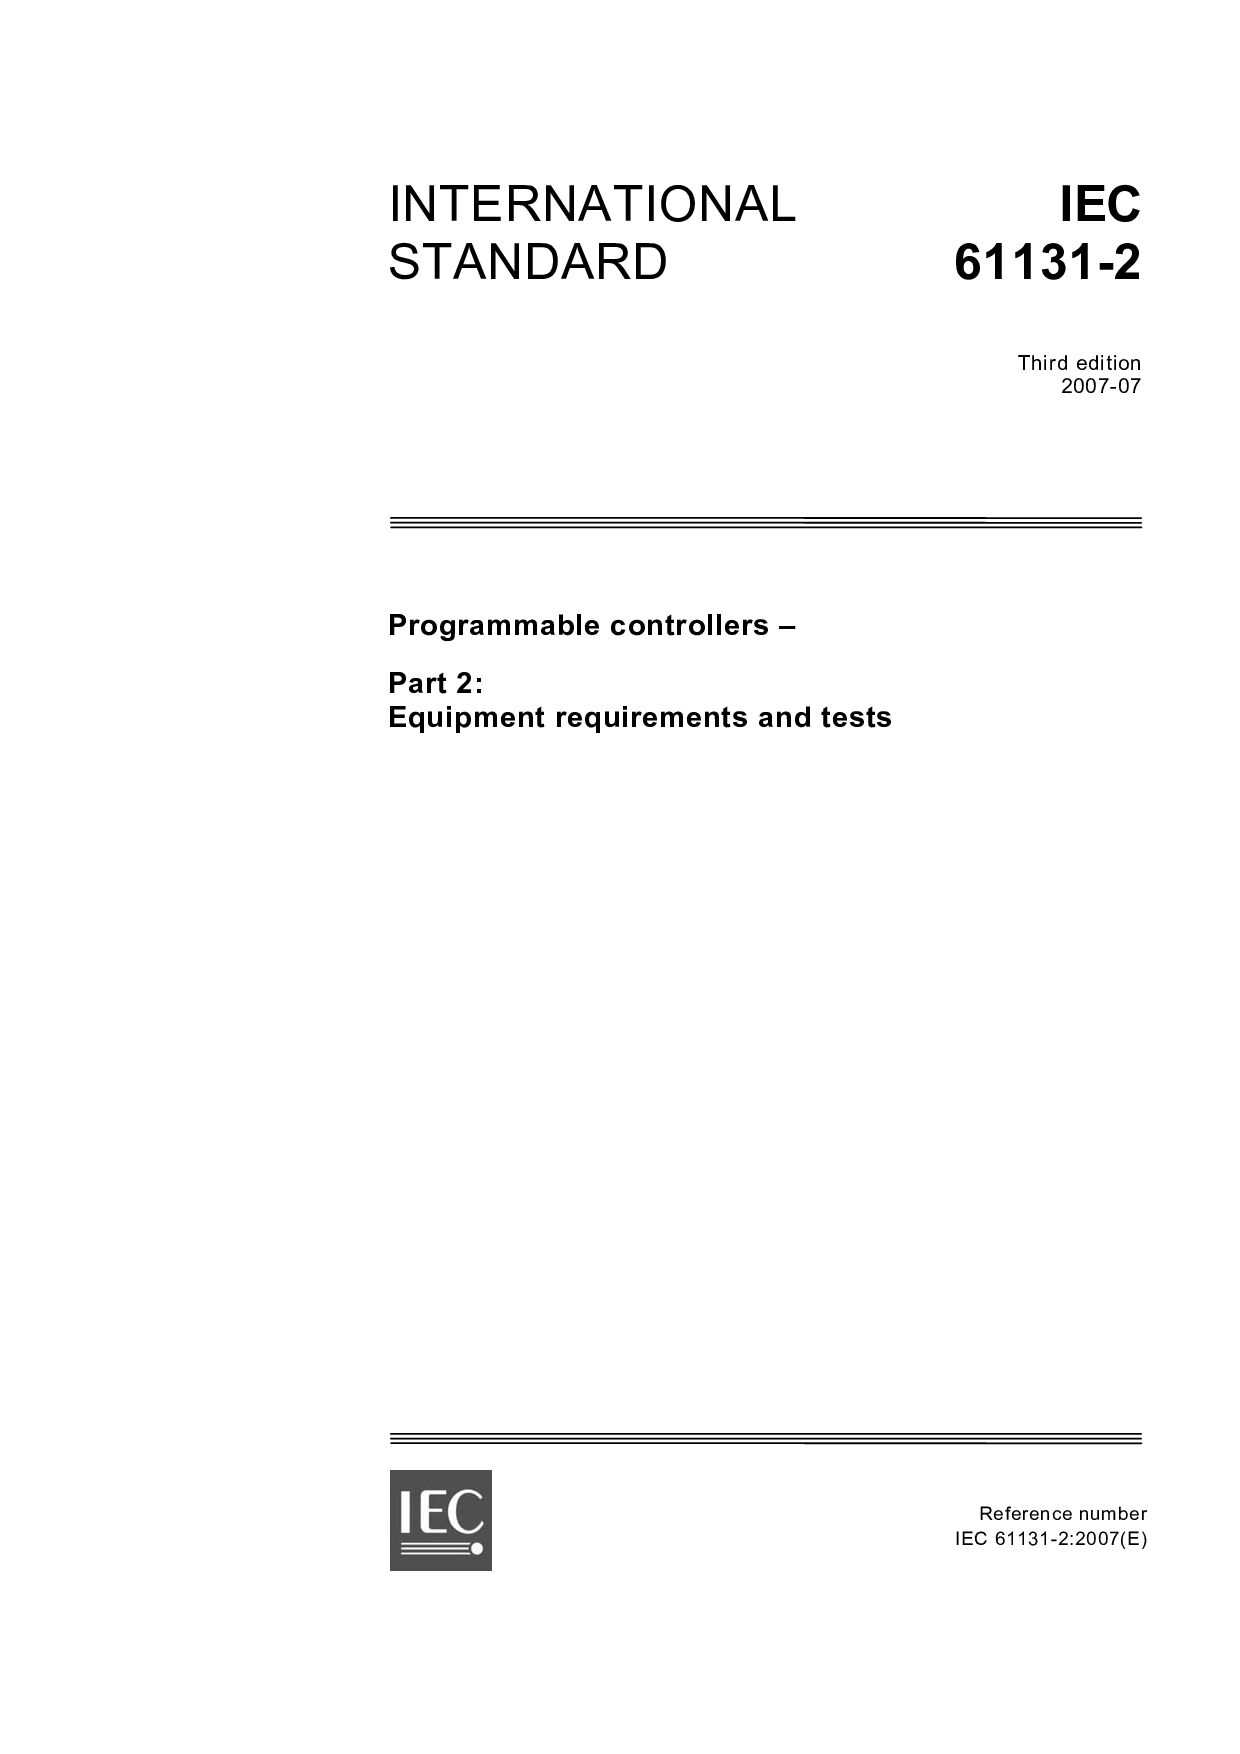 IEC 61131-2:2007